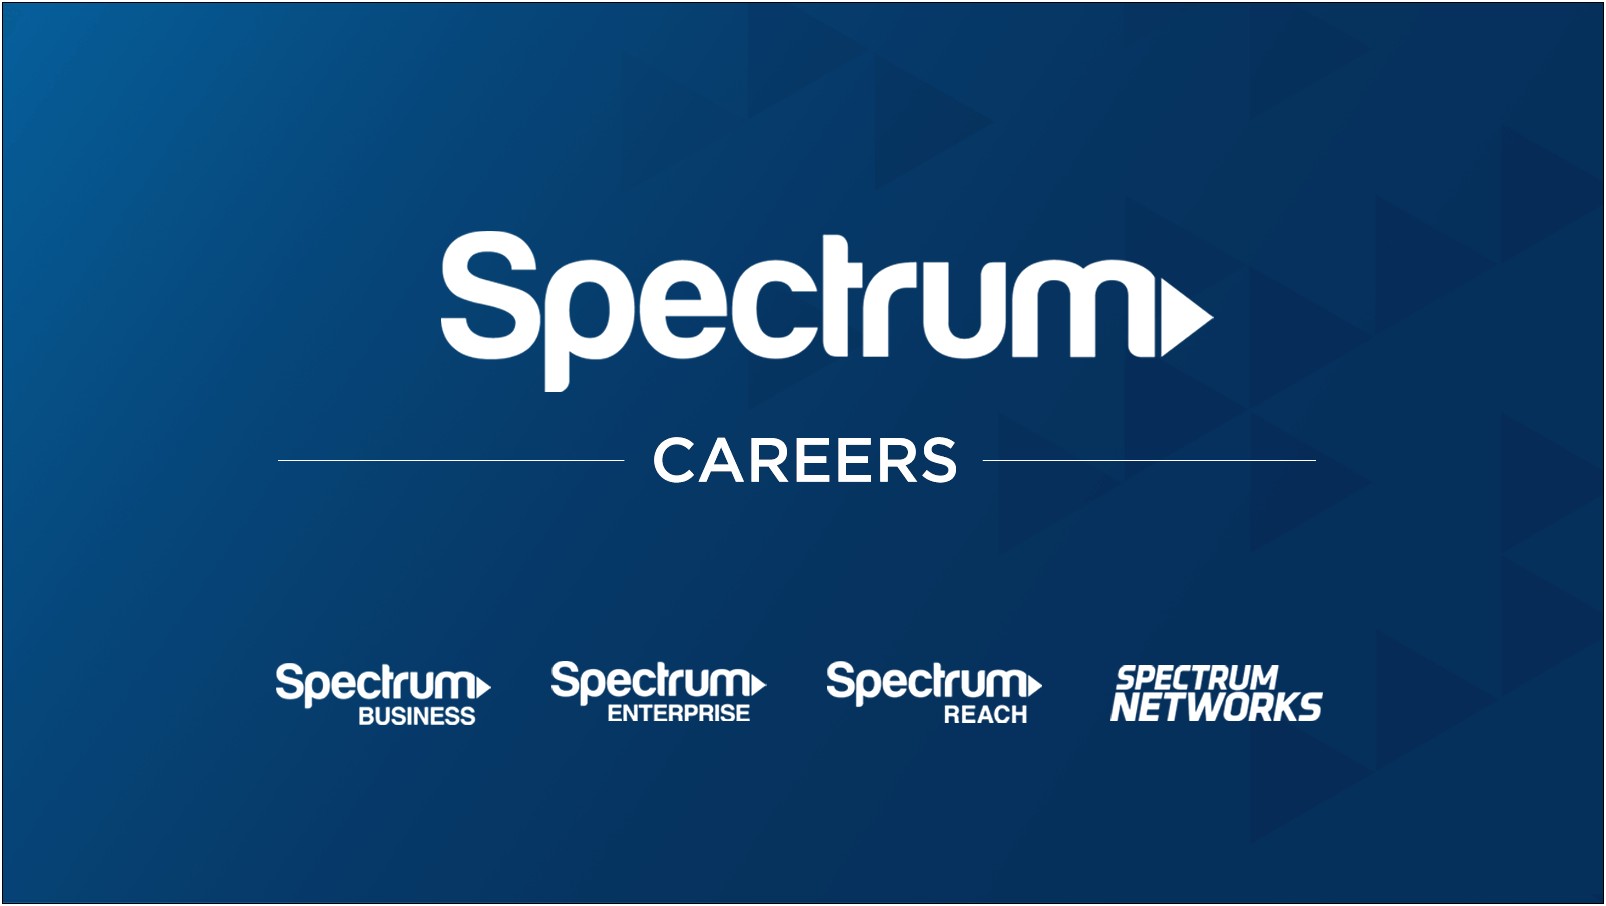 Spectrum Internet Voice Job Resume Description